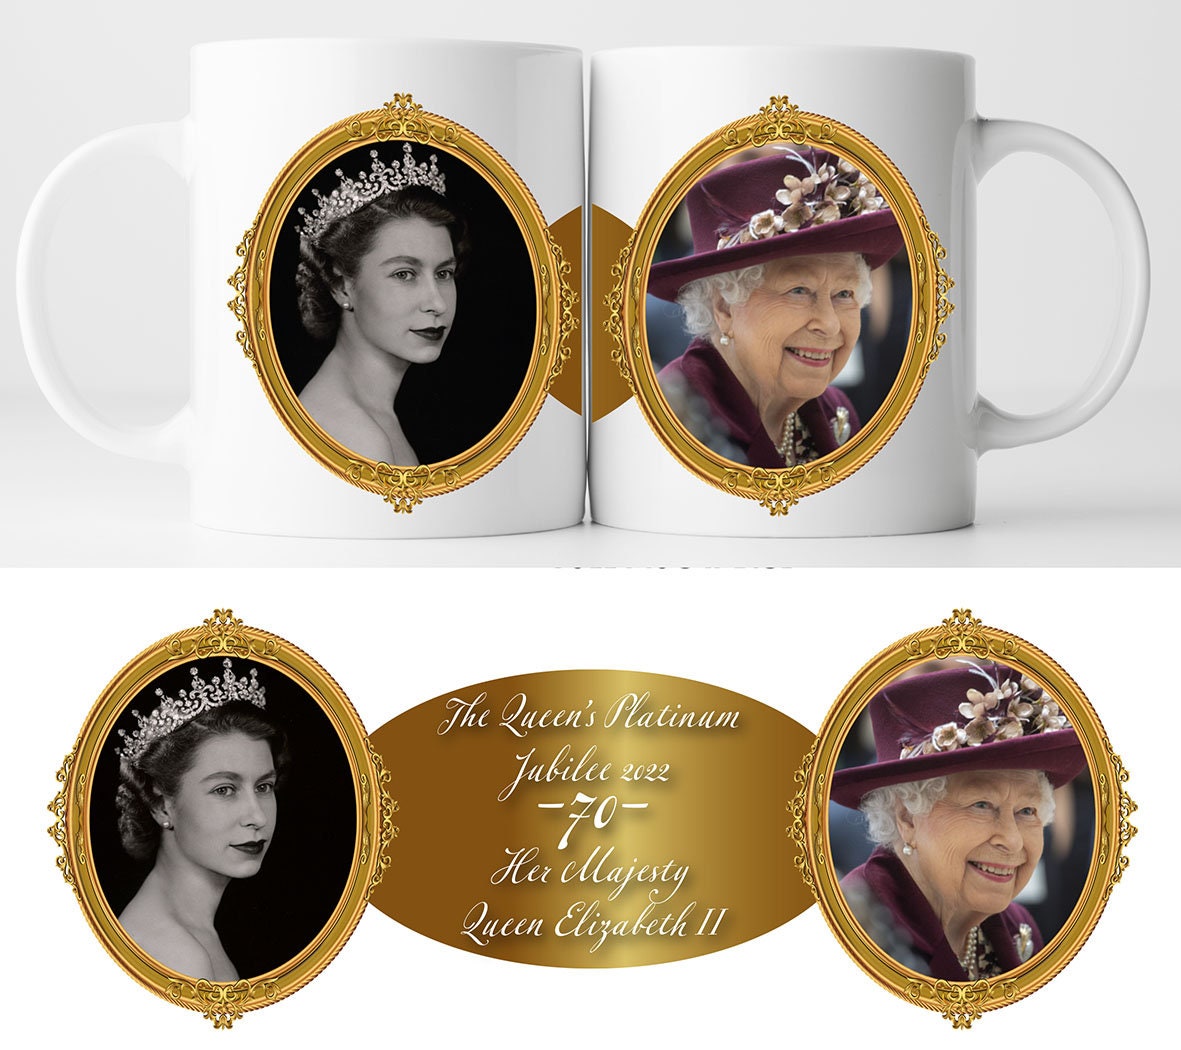 Her Majesty the Queen's Platinum Jubilee Mug C | Queen Elizabeth II Commemorative Cup | 70 Years